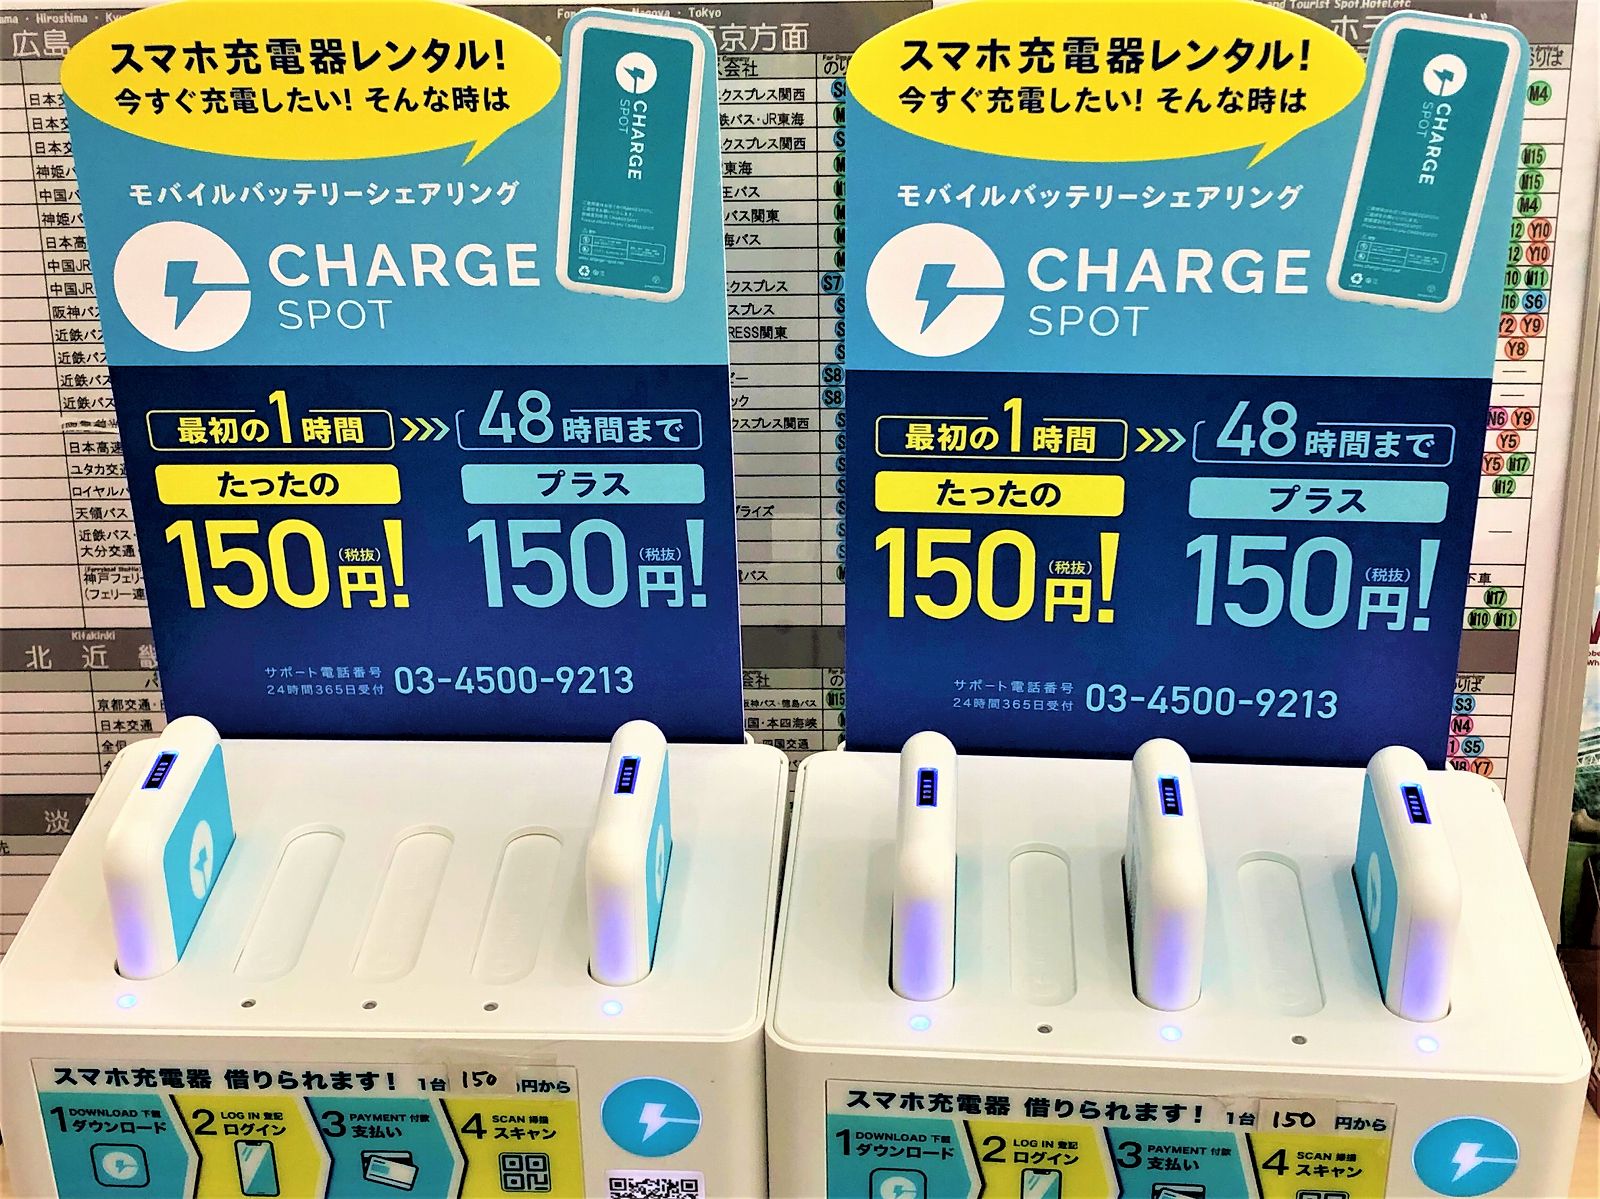 スマホを充電したい モバイルバッテリーシェアリング Charge Spot があるって知っとう Chargespot スマホ充電器レンタル モバイルバッテリーシェアリング 神戸市 神戸観光 東灘ジャーナル